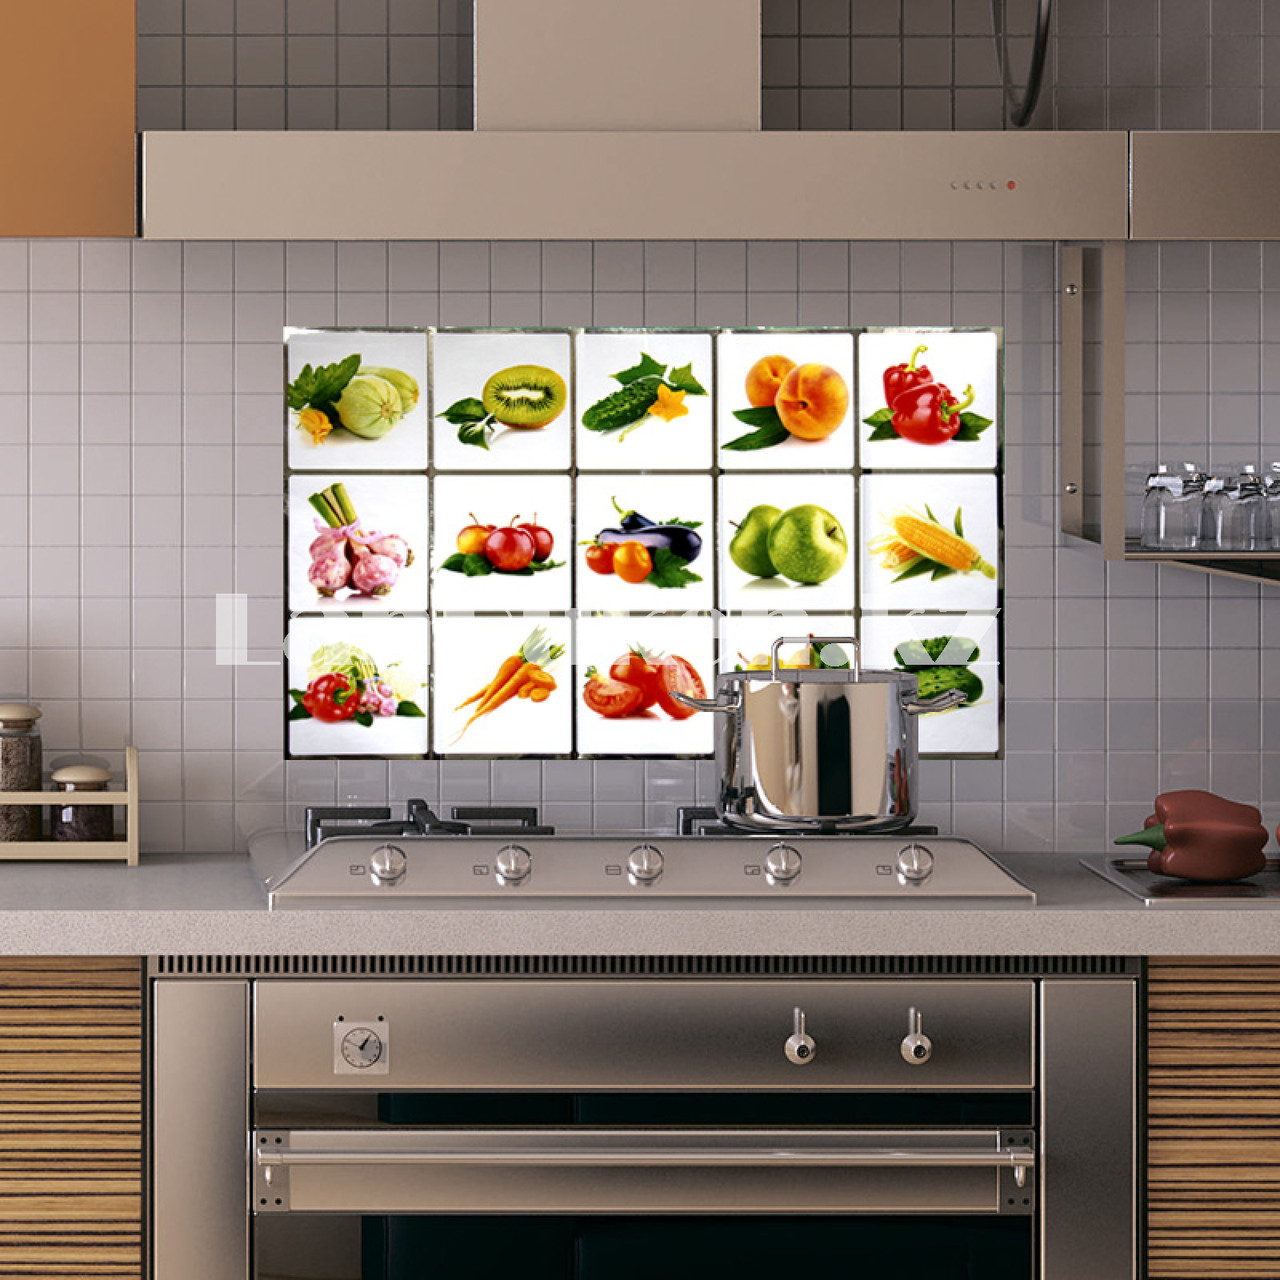 Кухонная наклейка на кафельную плитку 75х45 фрукты и овощи TL-229